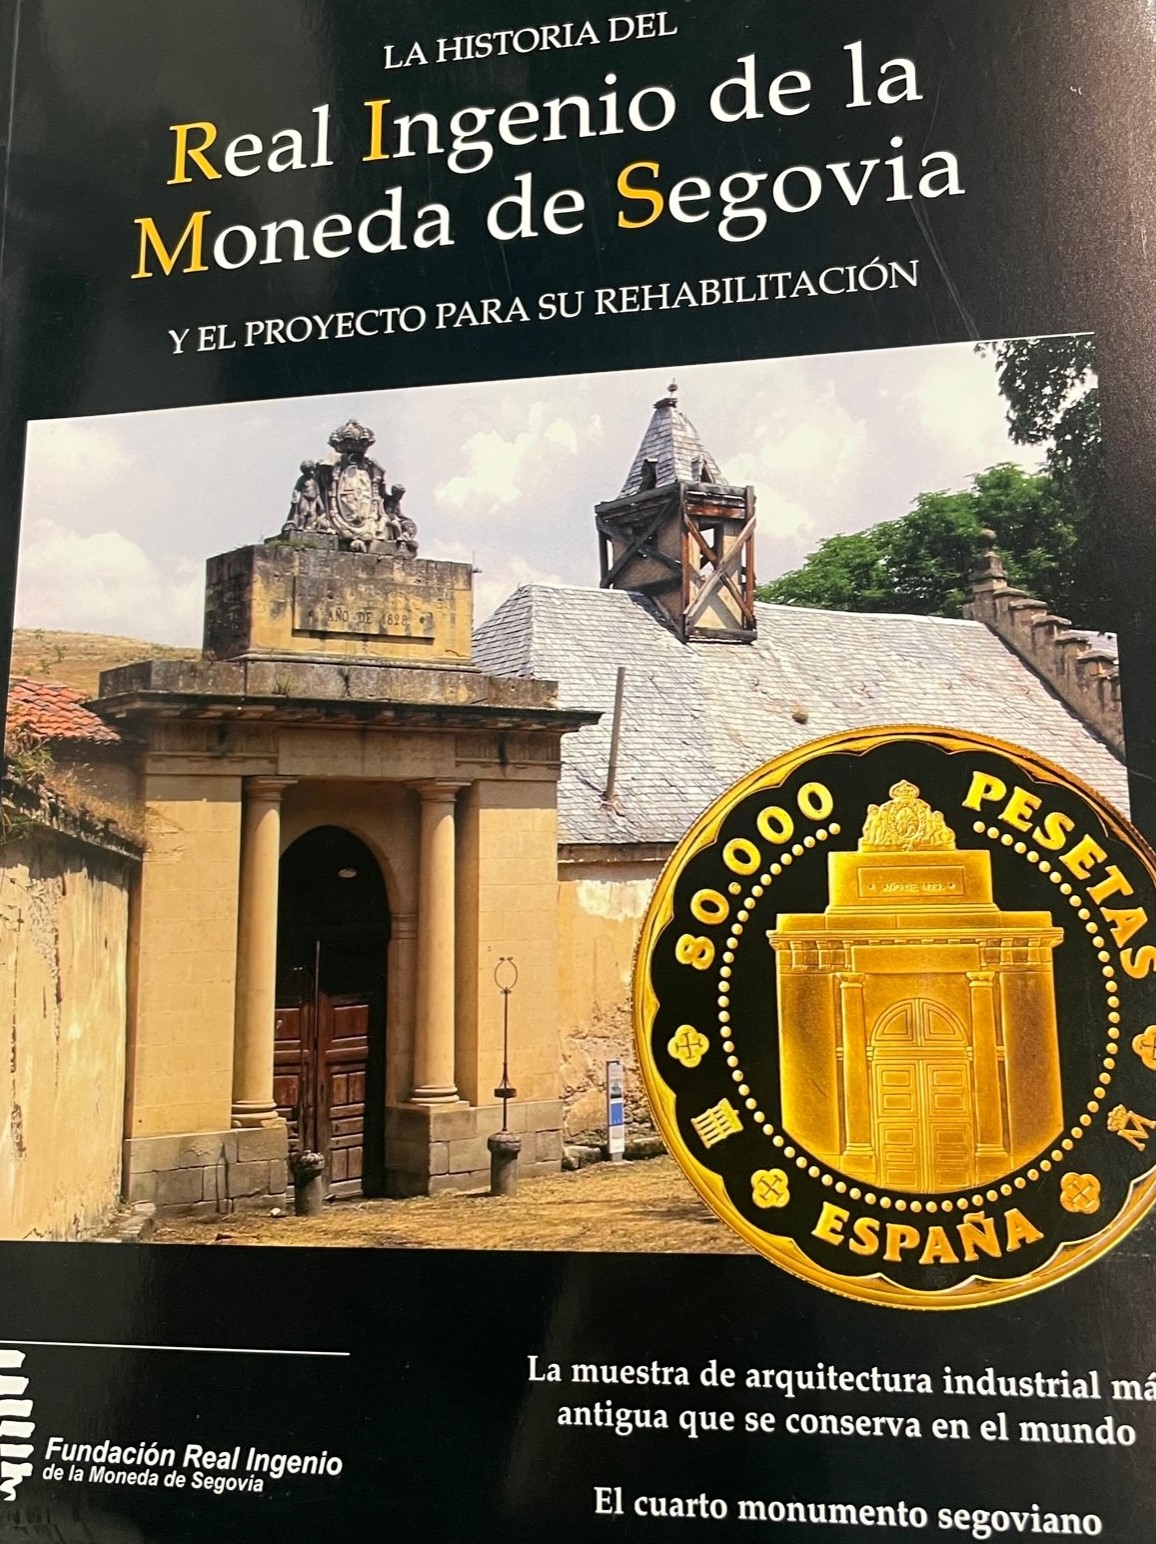 Historia del Real Ingenio de la moneda de Segovia y el proyecto para su rehabilitación. Fundación Real Ingenio de la moneda de Segovia